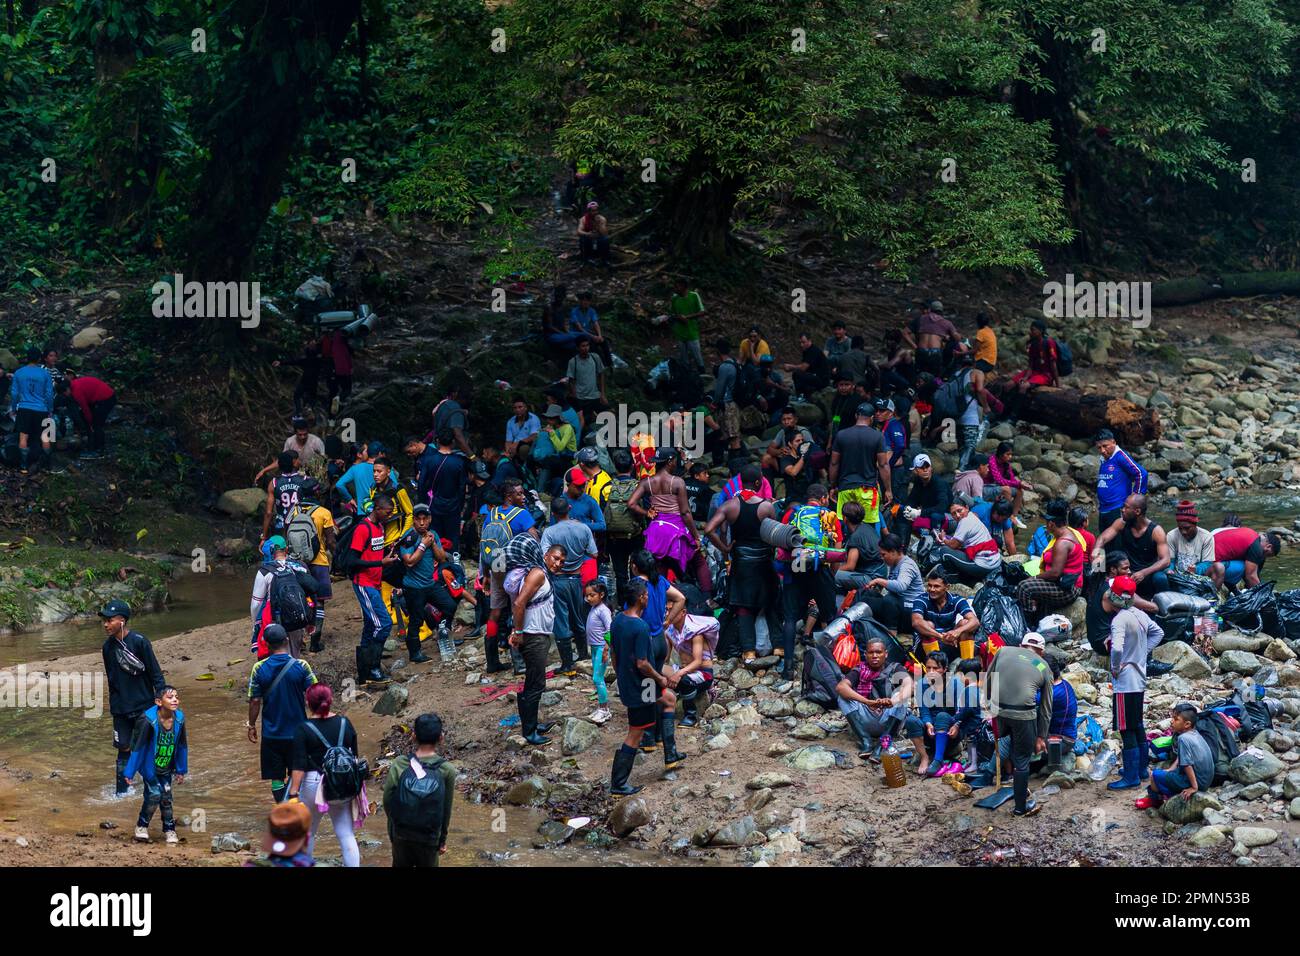 I migranti si fermano per una pausa prima di salire su un sentiero collinare fangoso nella giungla selvaggia e pericolosa del Darién Gap tra Colombia e Panamá. Foto Stock